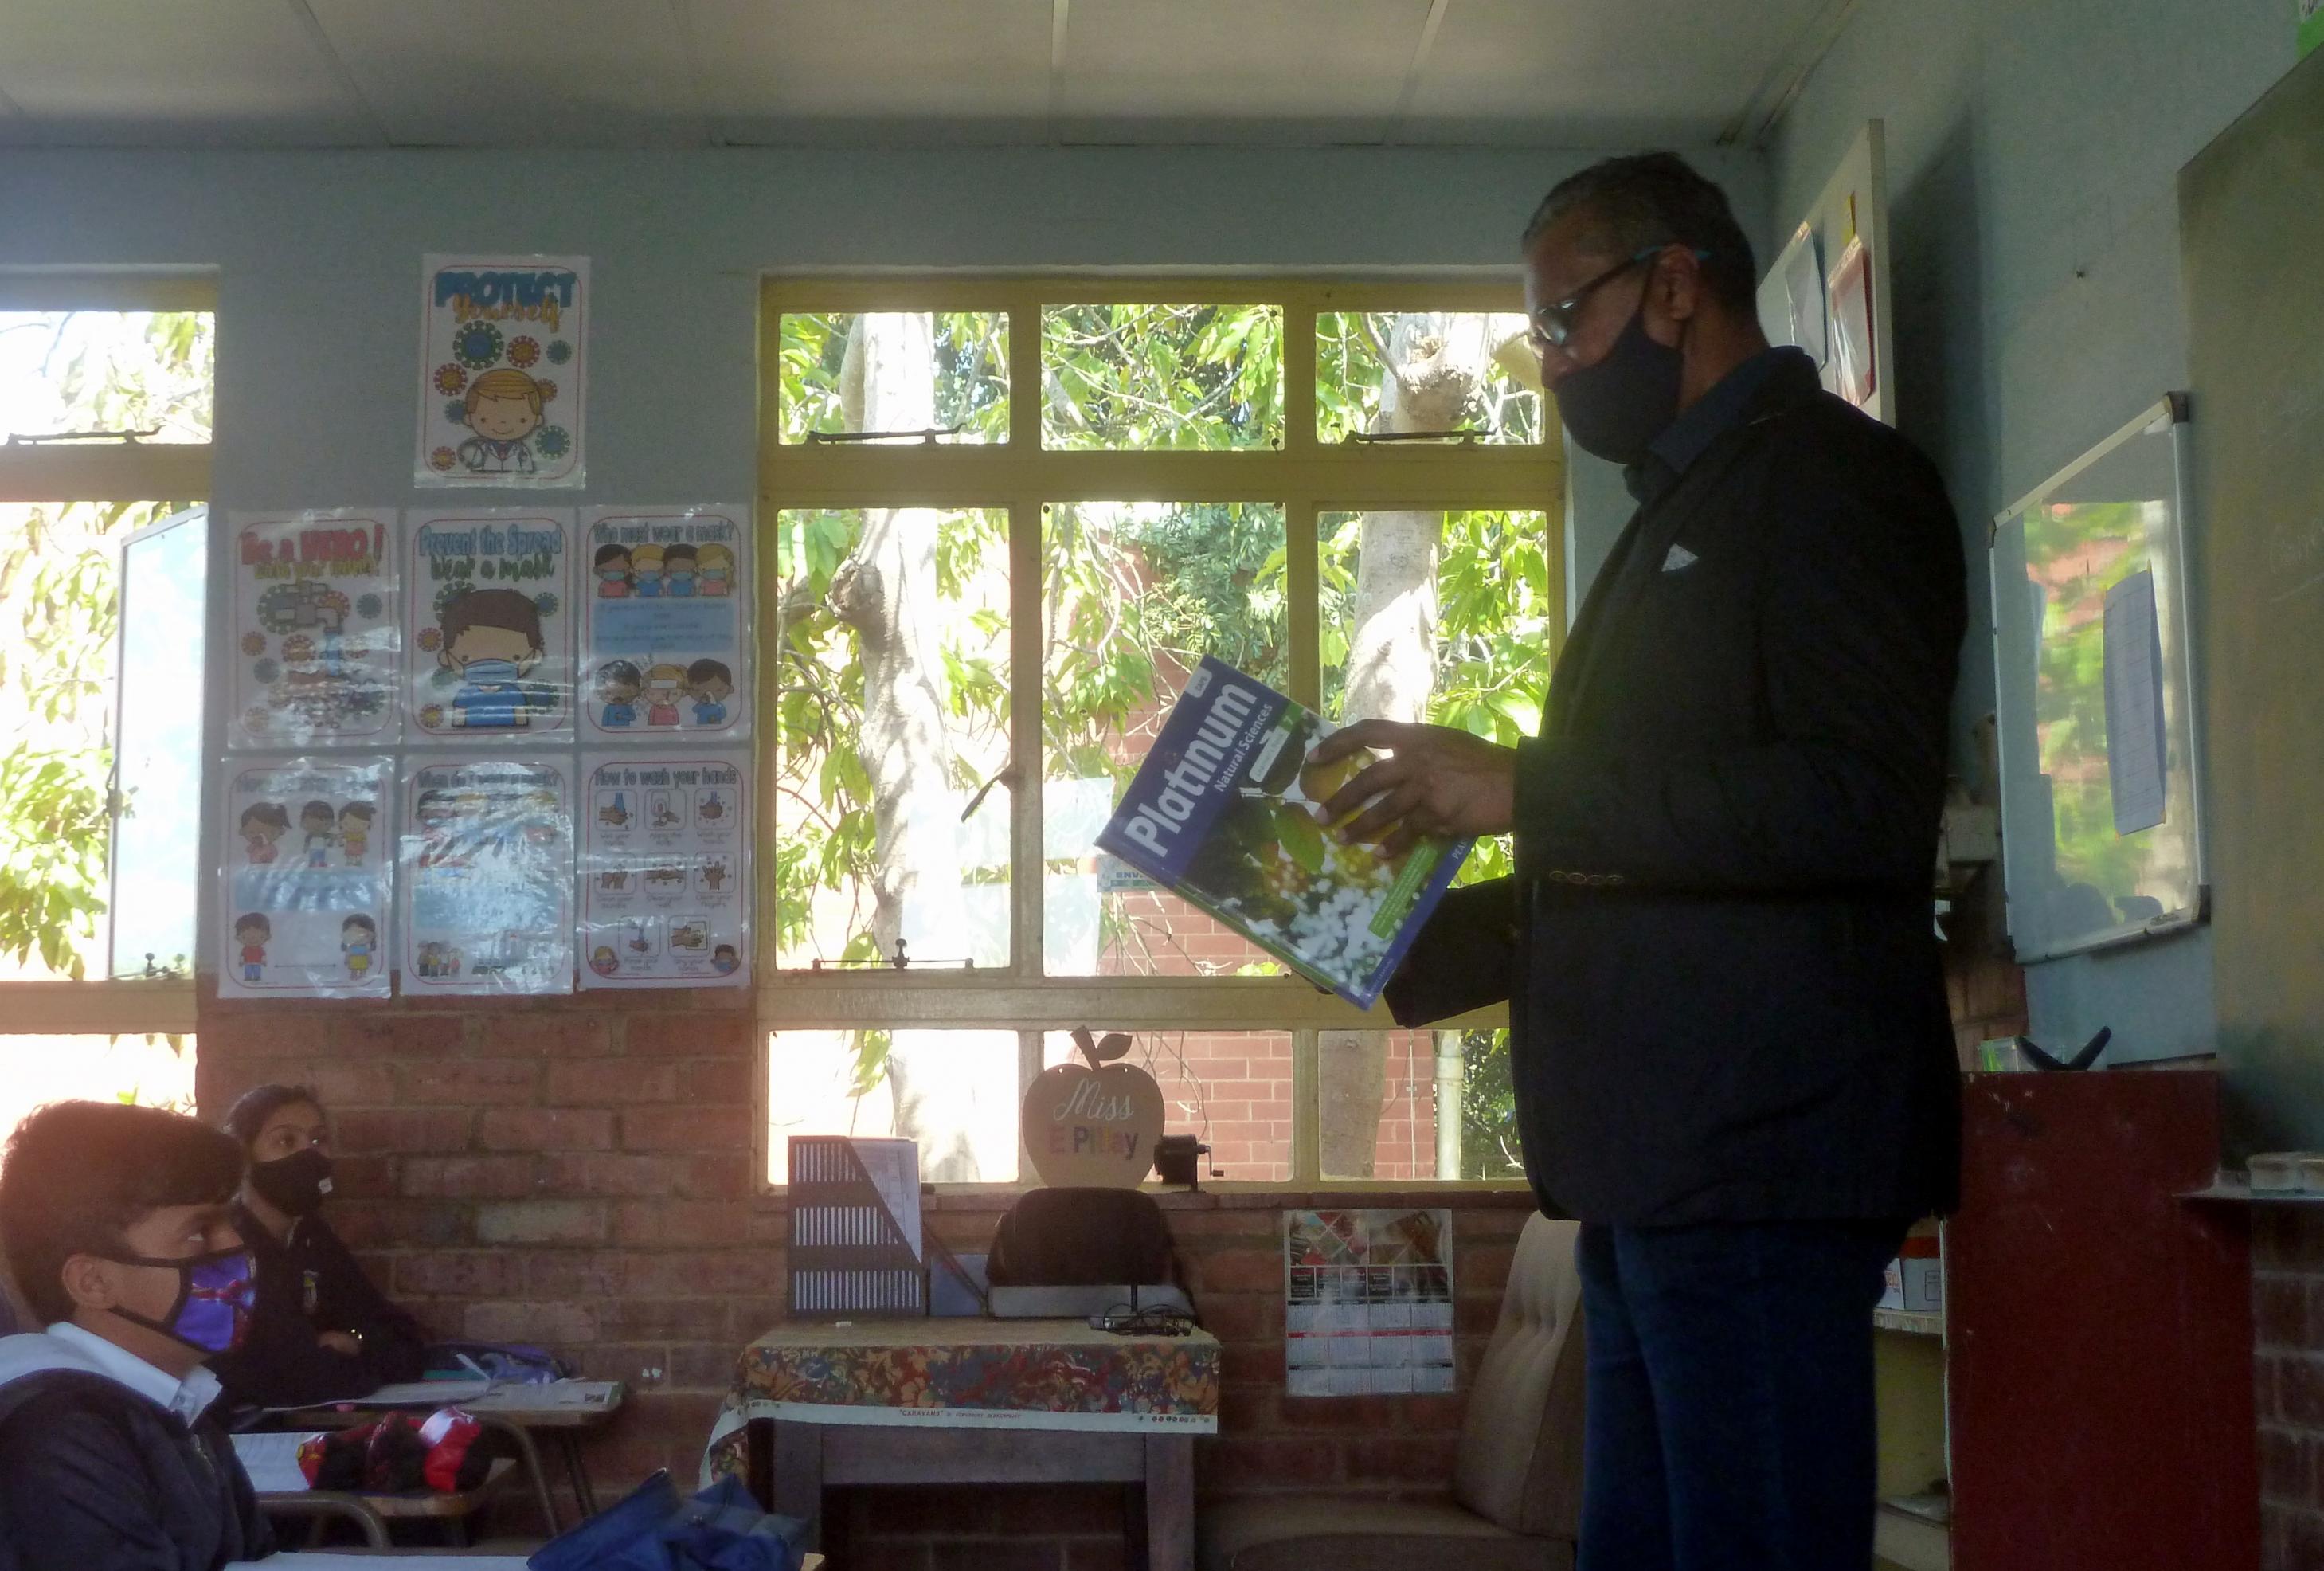 Der Lehrer steht mit einem Buch vor seiner Klasse, die Schüler schauen ihn an, an der Wand hängen Corona-Aufklärungsposter